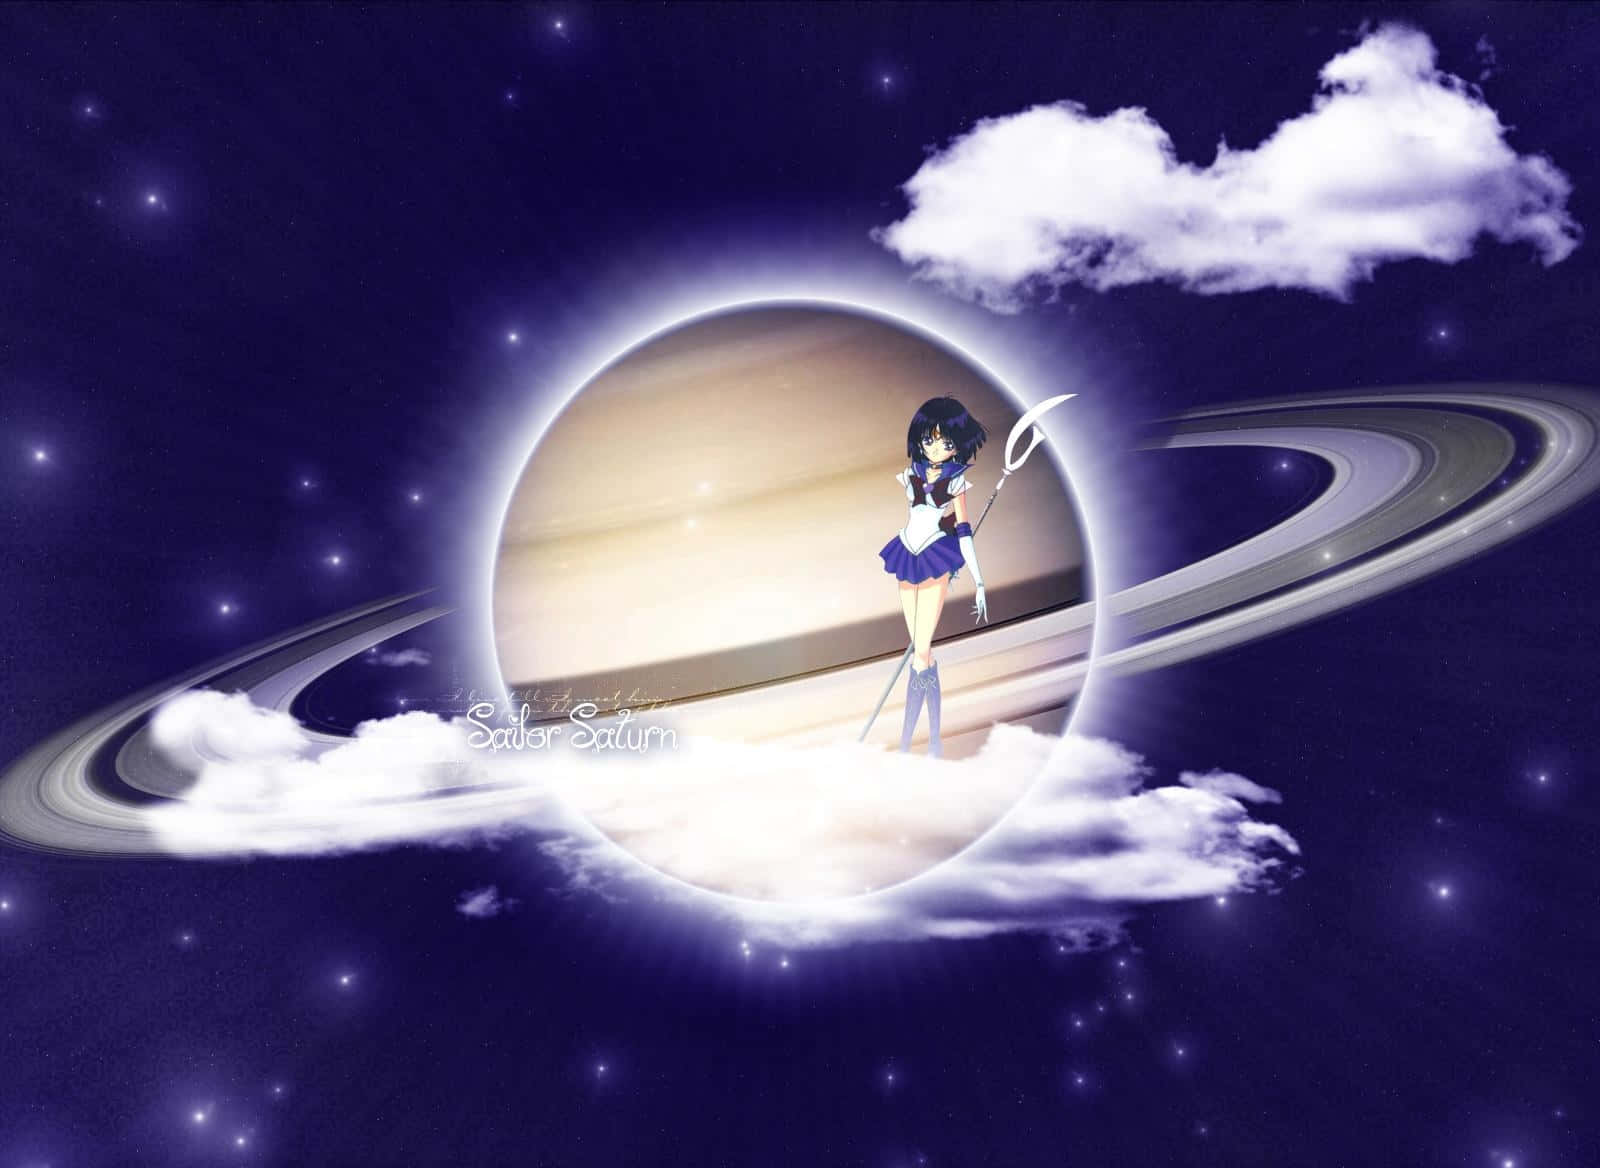 Sailor Saturn, ødelæggelsens jomfru, står klar til at udløse sin formidabel kraft. Wallpaper